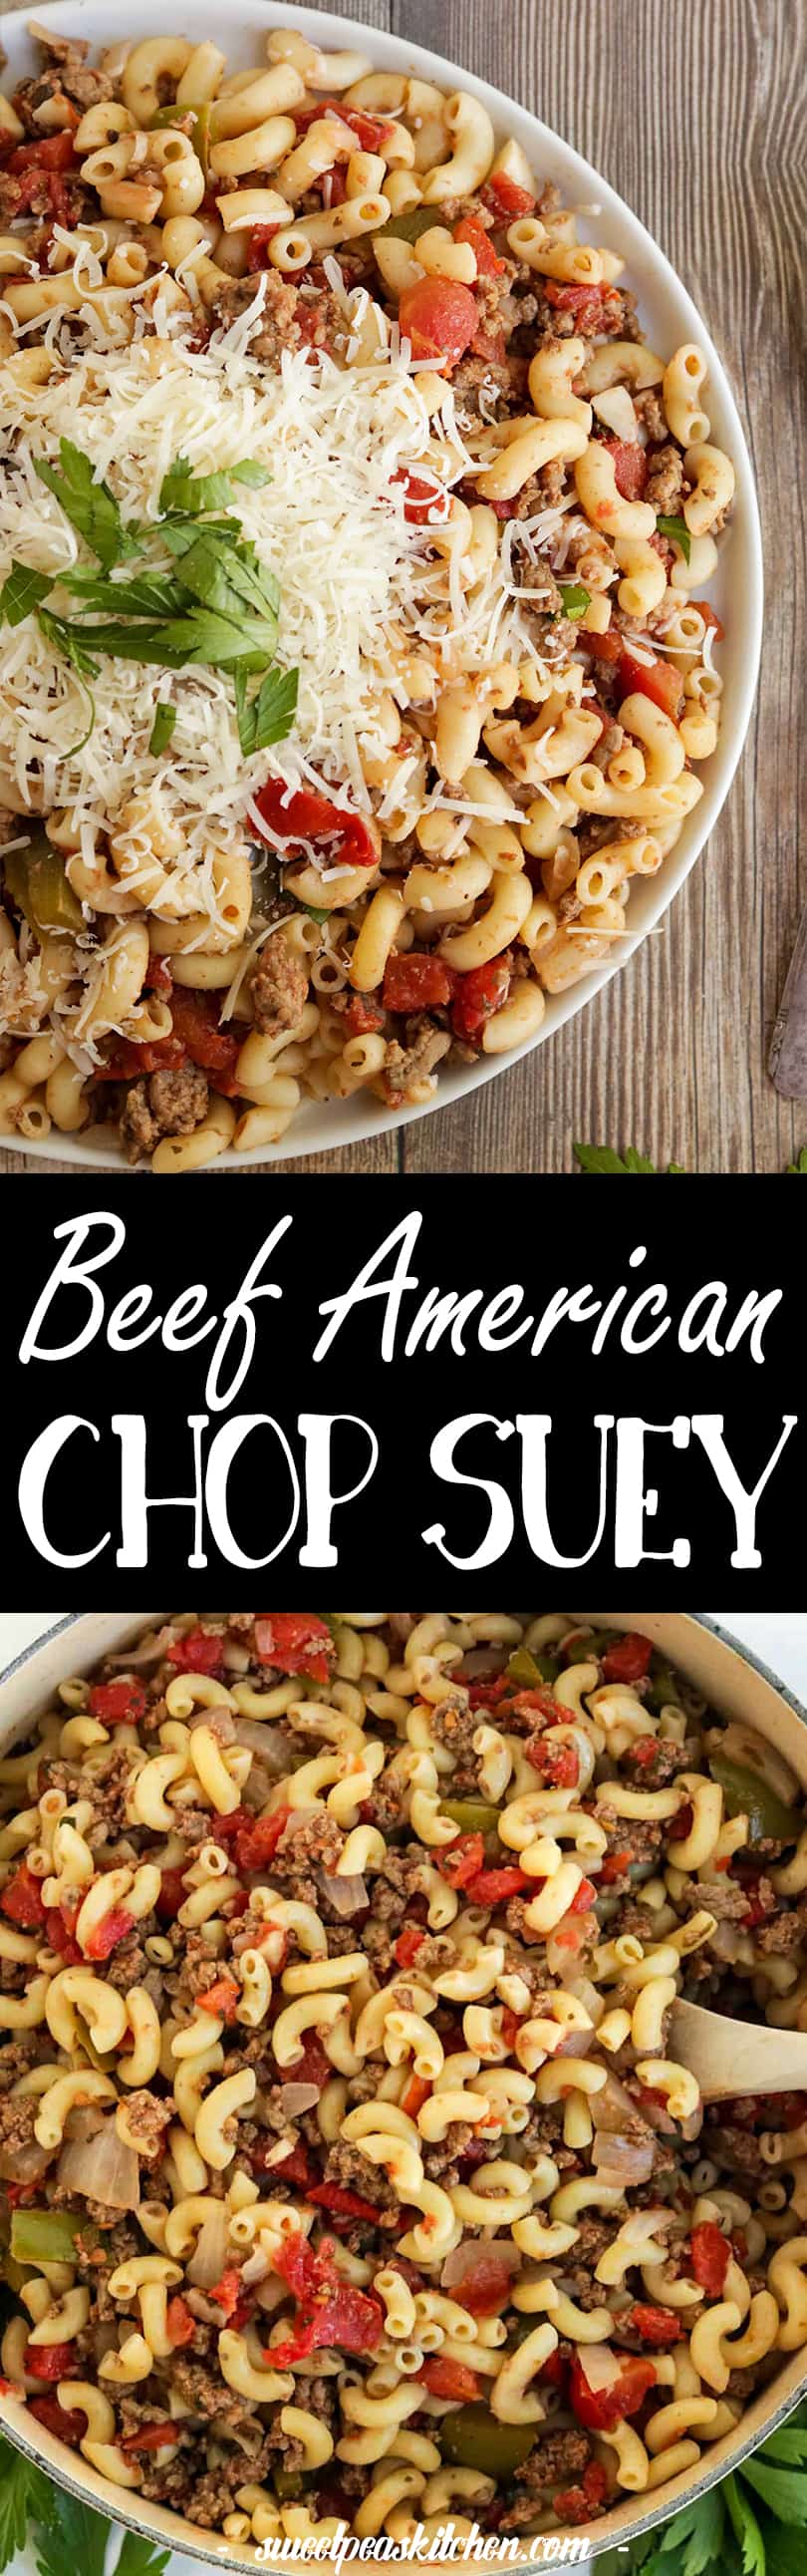 chop suey kitchen